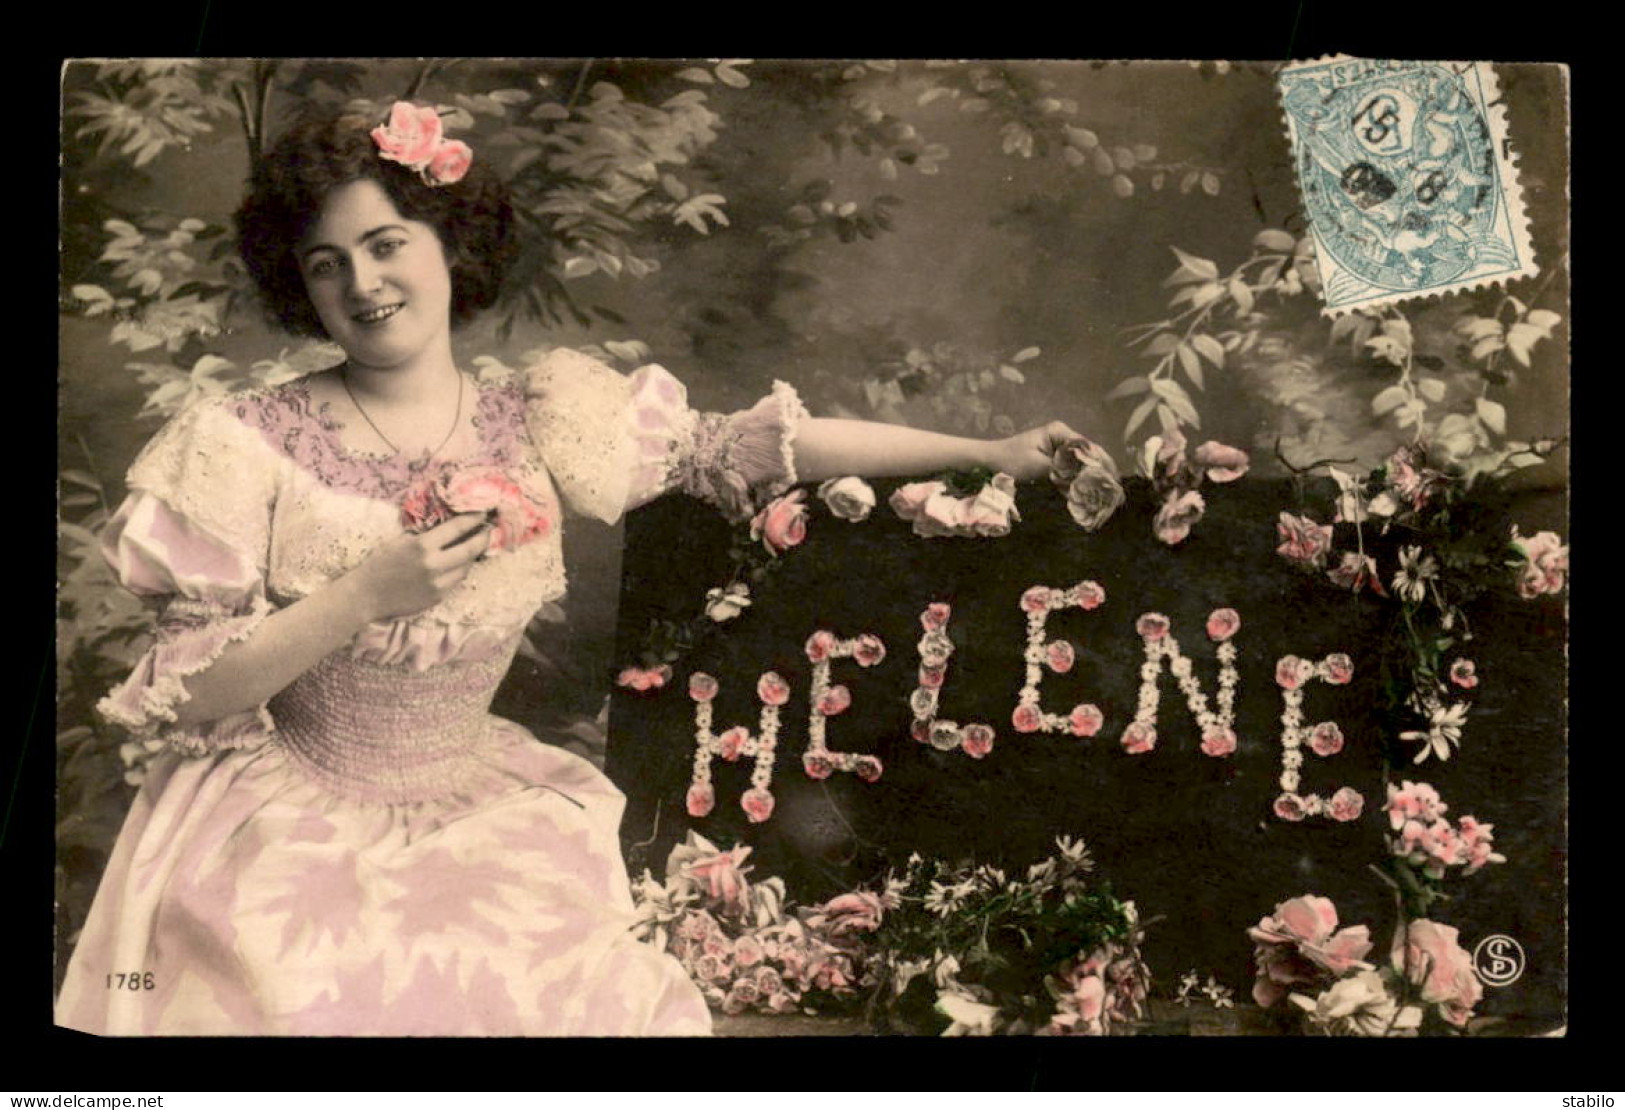 PRENOMS - HELENE - FEMME ET FLEURS - Firstnames